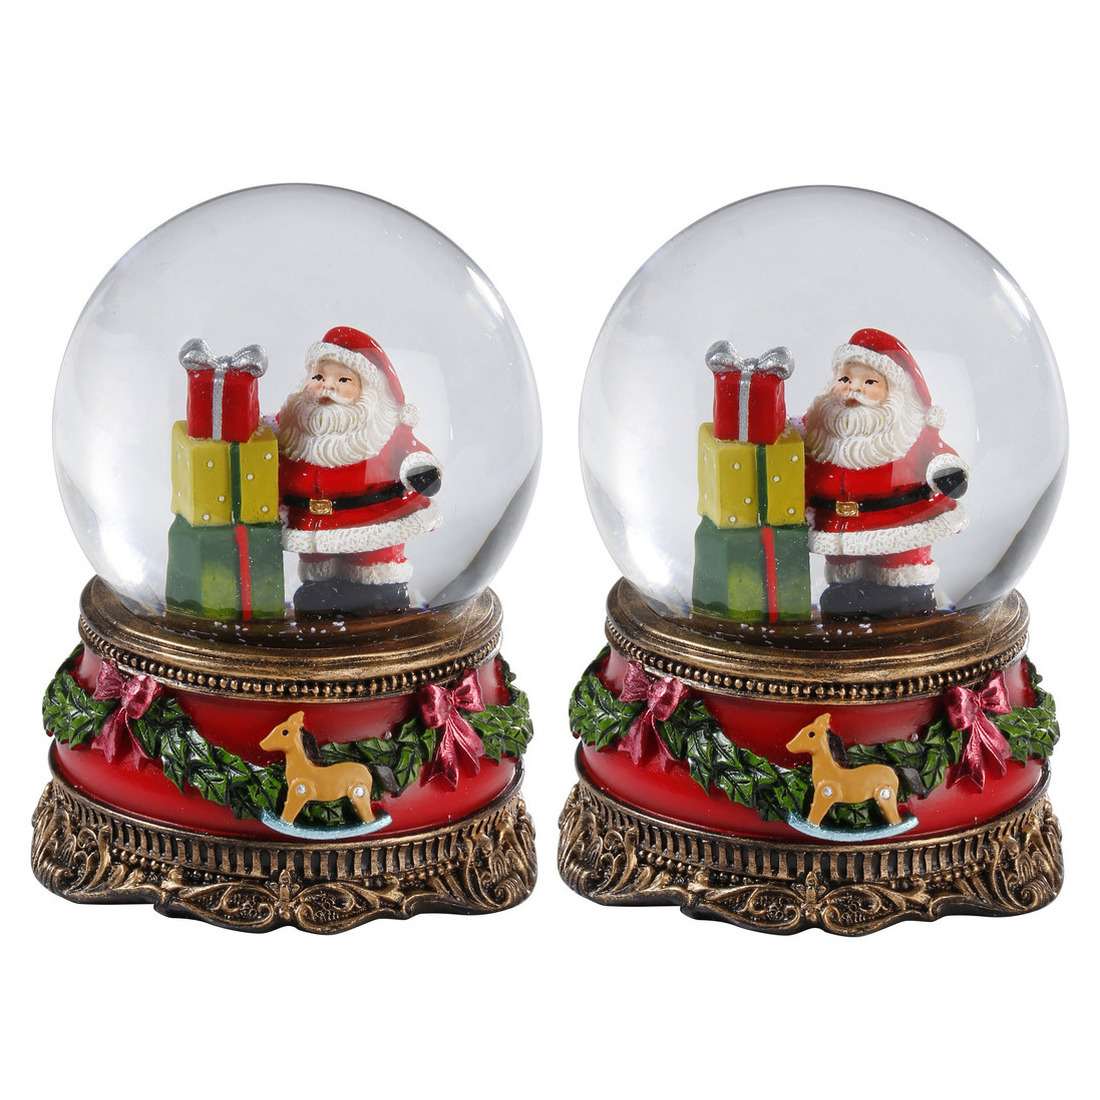 2x Sneeuwbollen-snowglobes kerstman met cadeaus 9 cm